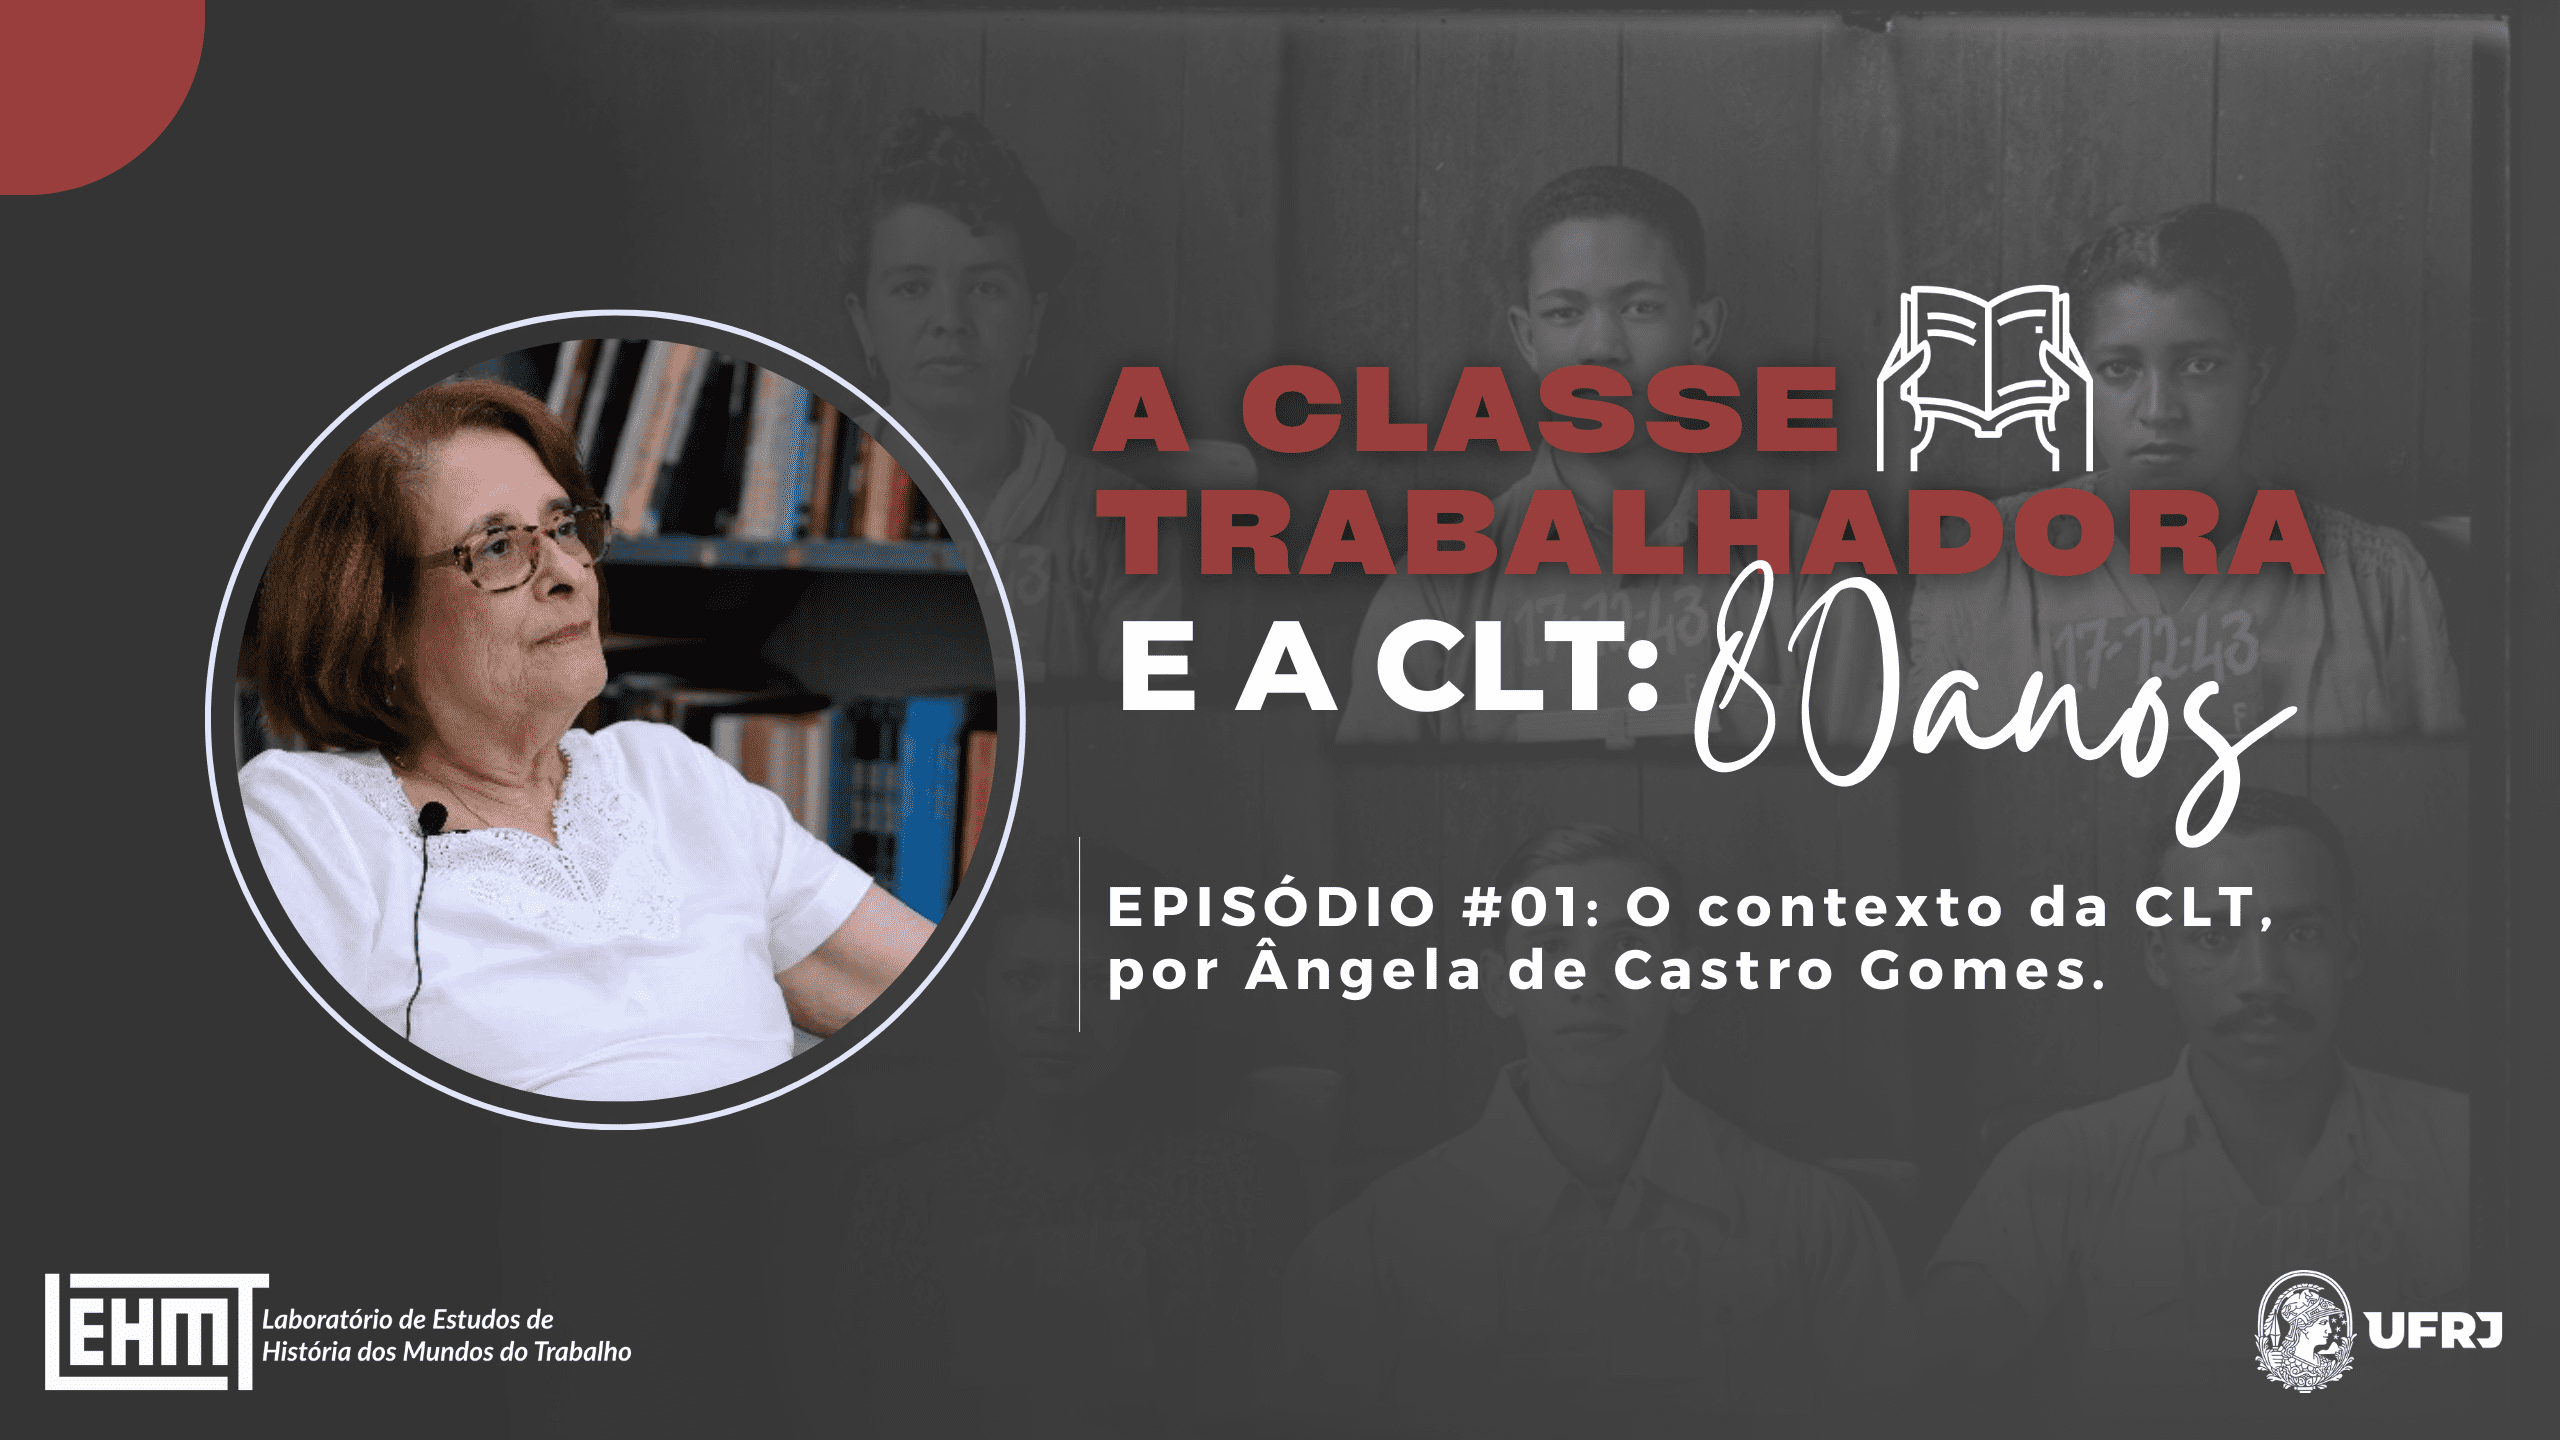 LABUTA – A Classe Trabalhadora e a CLT: 80 anos #01 – Angela de Castro Gomes